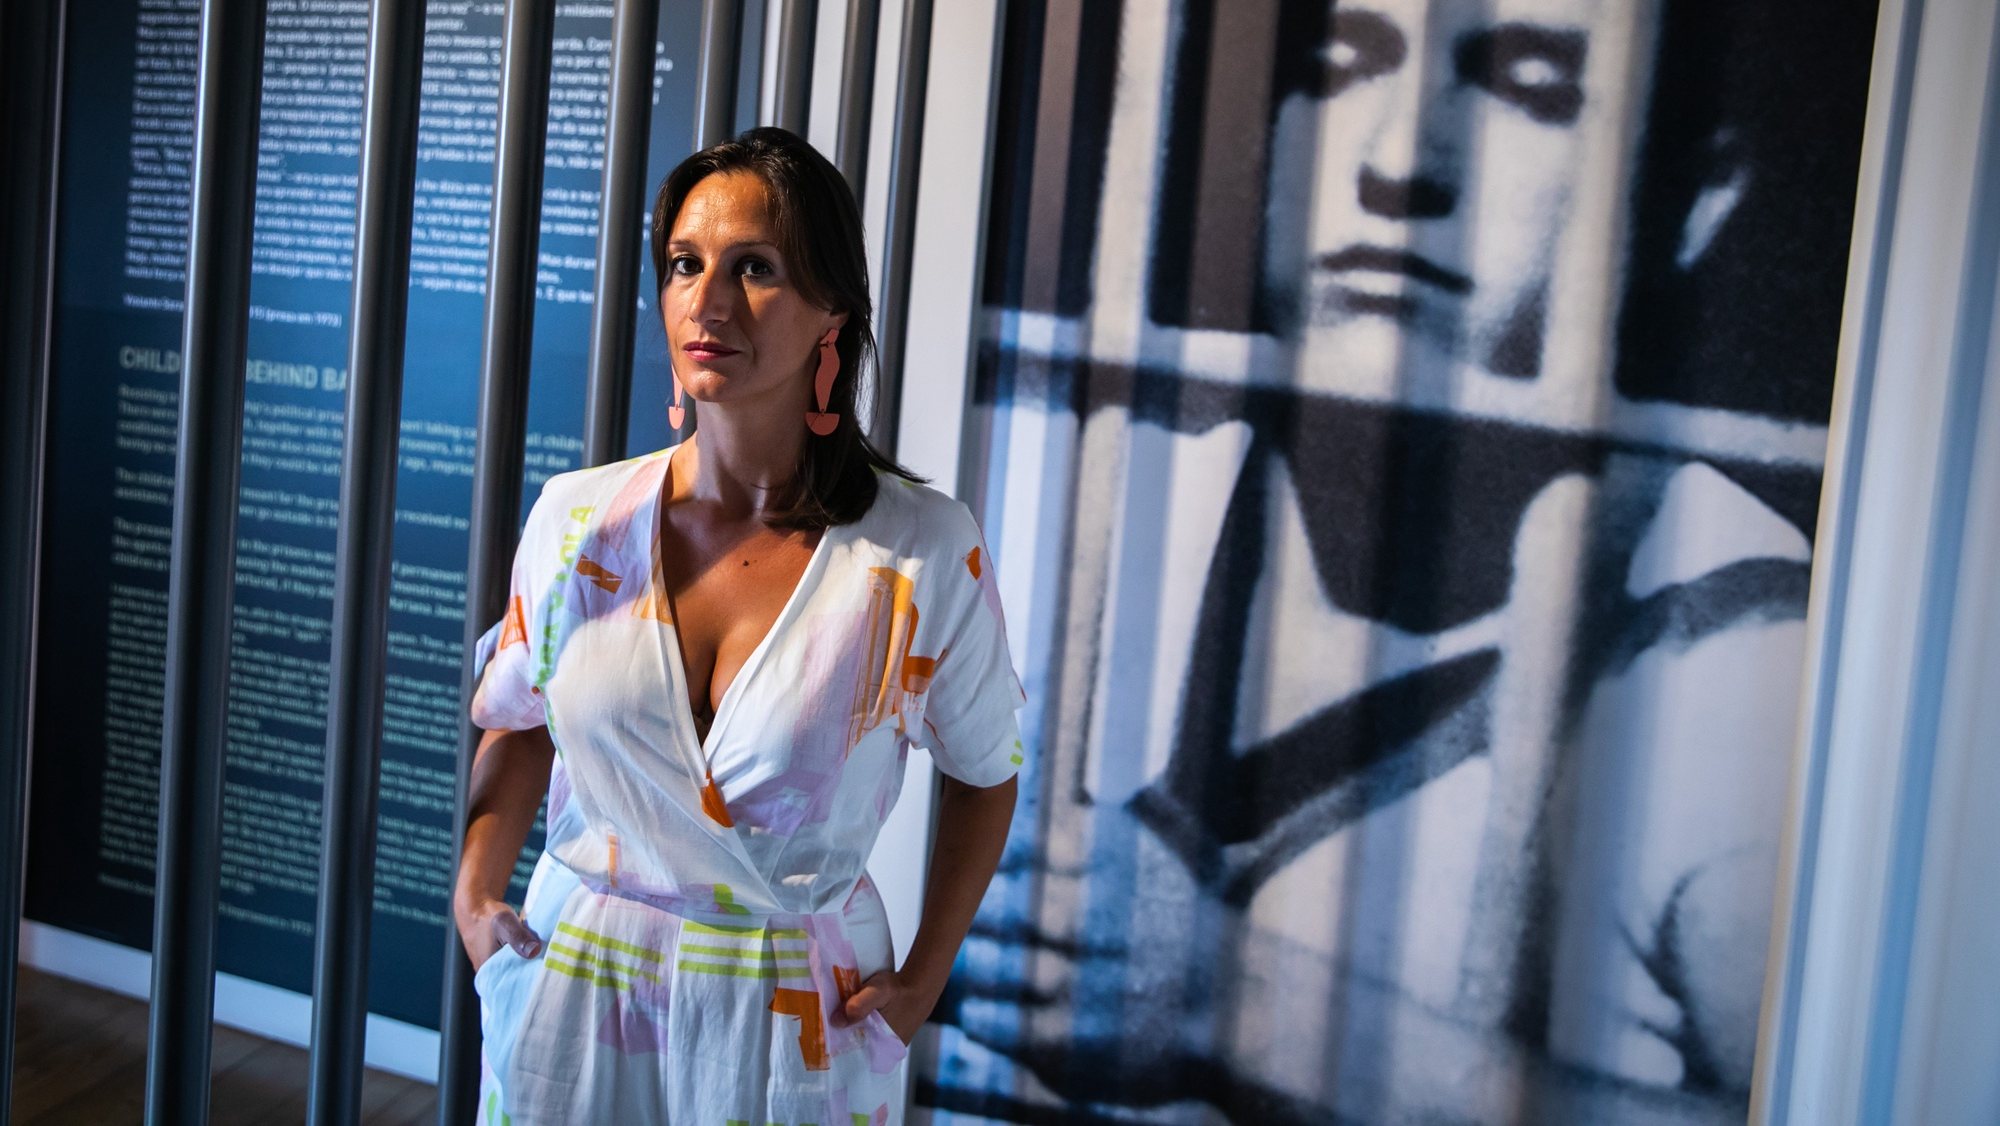 A diretora do Museu do Aljube - Resistência e Liberdade, Rita Rato, em entrevista à Agência Lusa, no Museu do Aljube, em Lisboa, 25 de agosto de 2021. (ACOMPANHA TEXTO DE 28/08/21)  JOSÉ SENA GOULÃO/LUSA